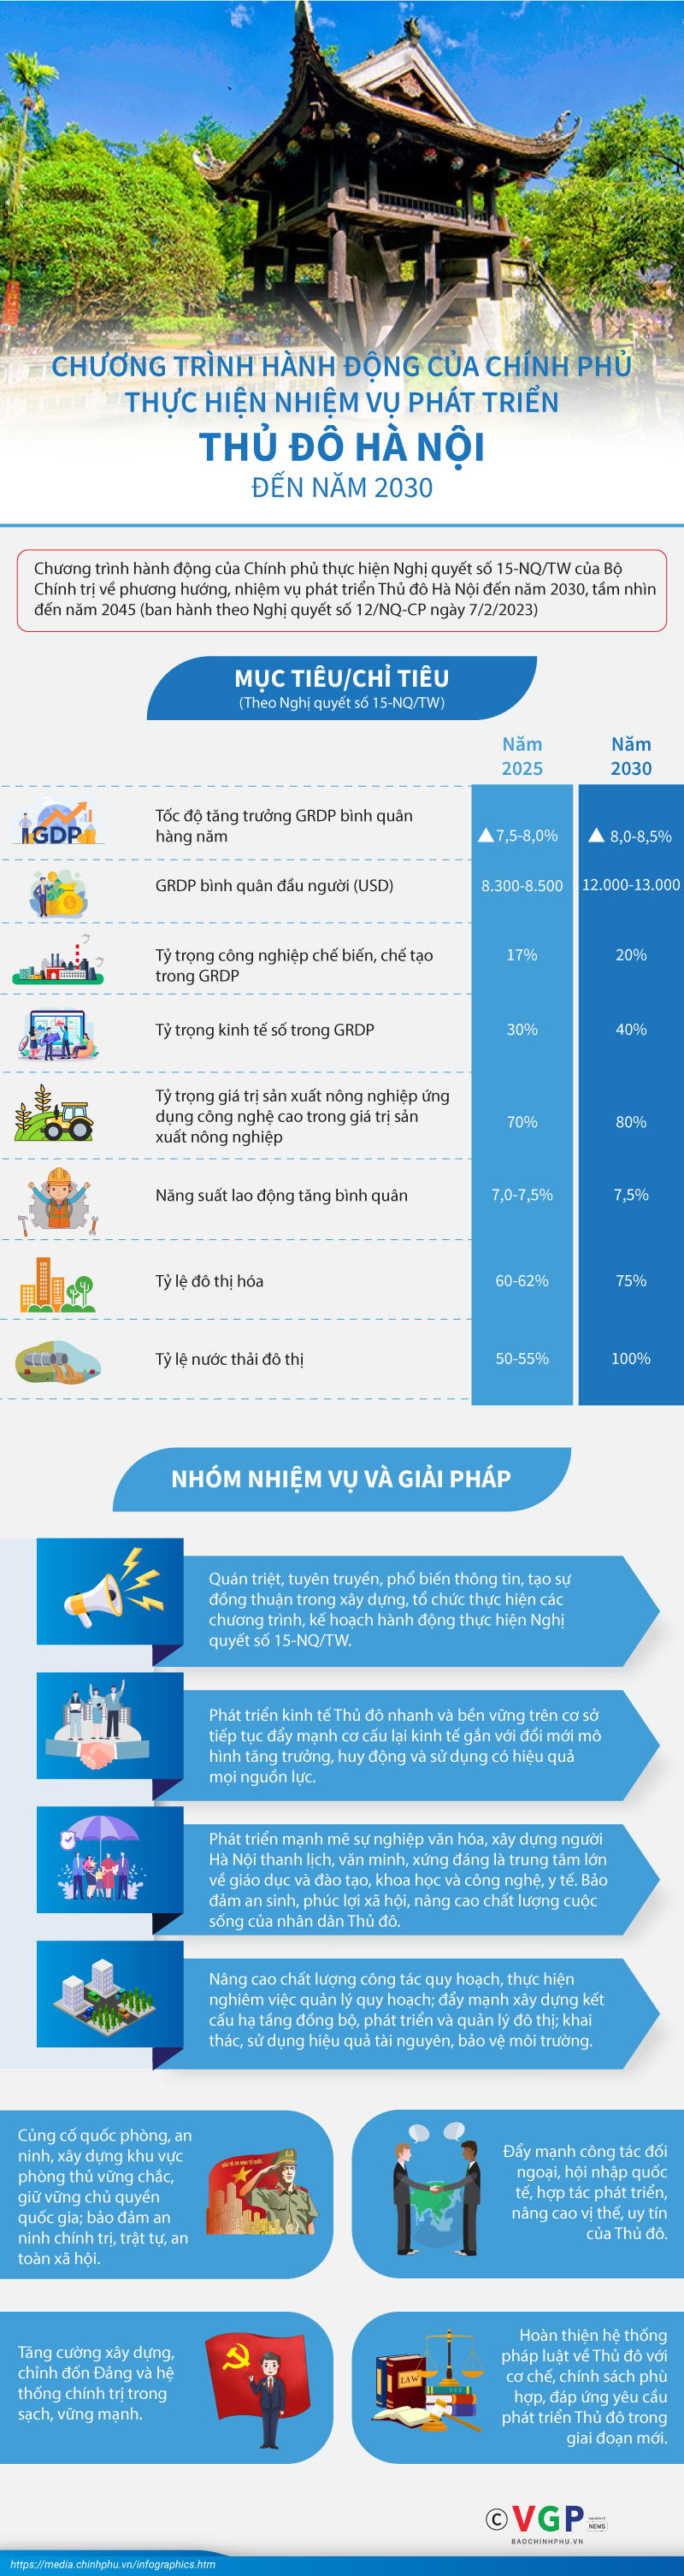 Infographics: Chương trình hành động của Chính phủ thực hiện nhiệm vụ phát triển Thủ đô Hà Nội đến năm 2030 - Ảnh 1.